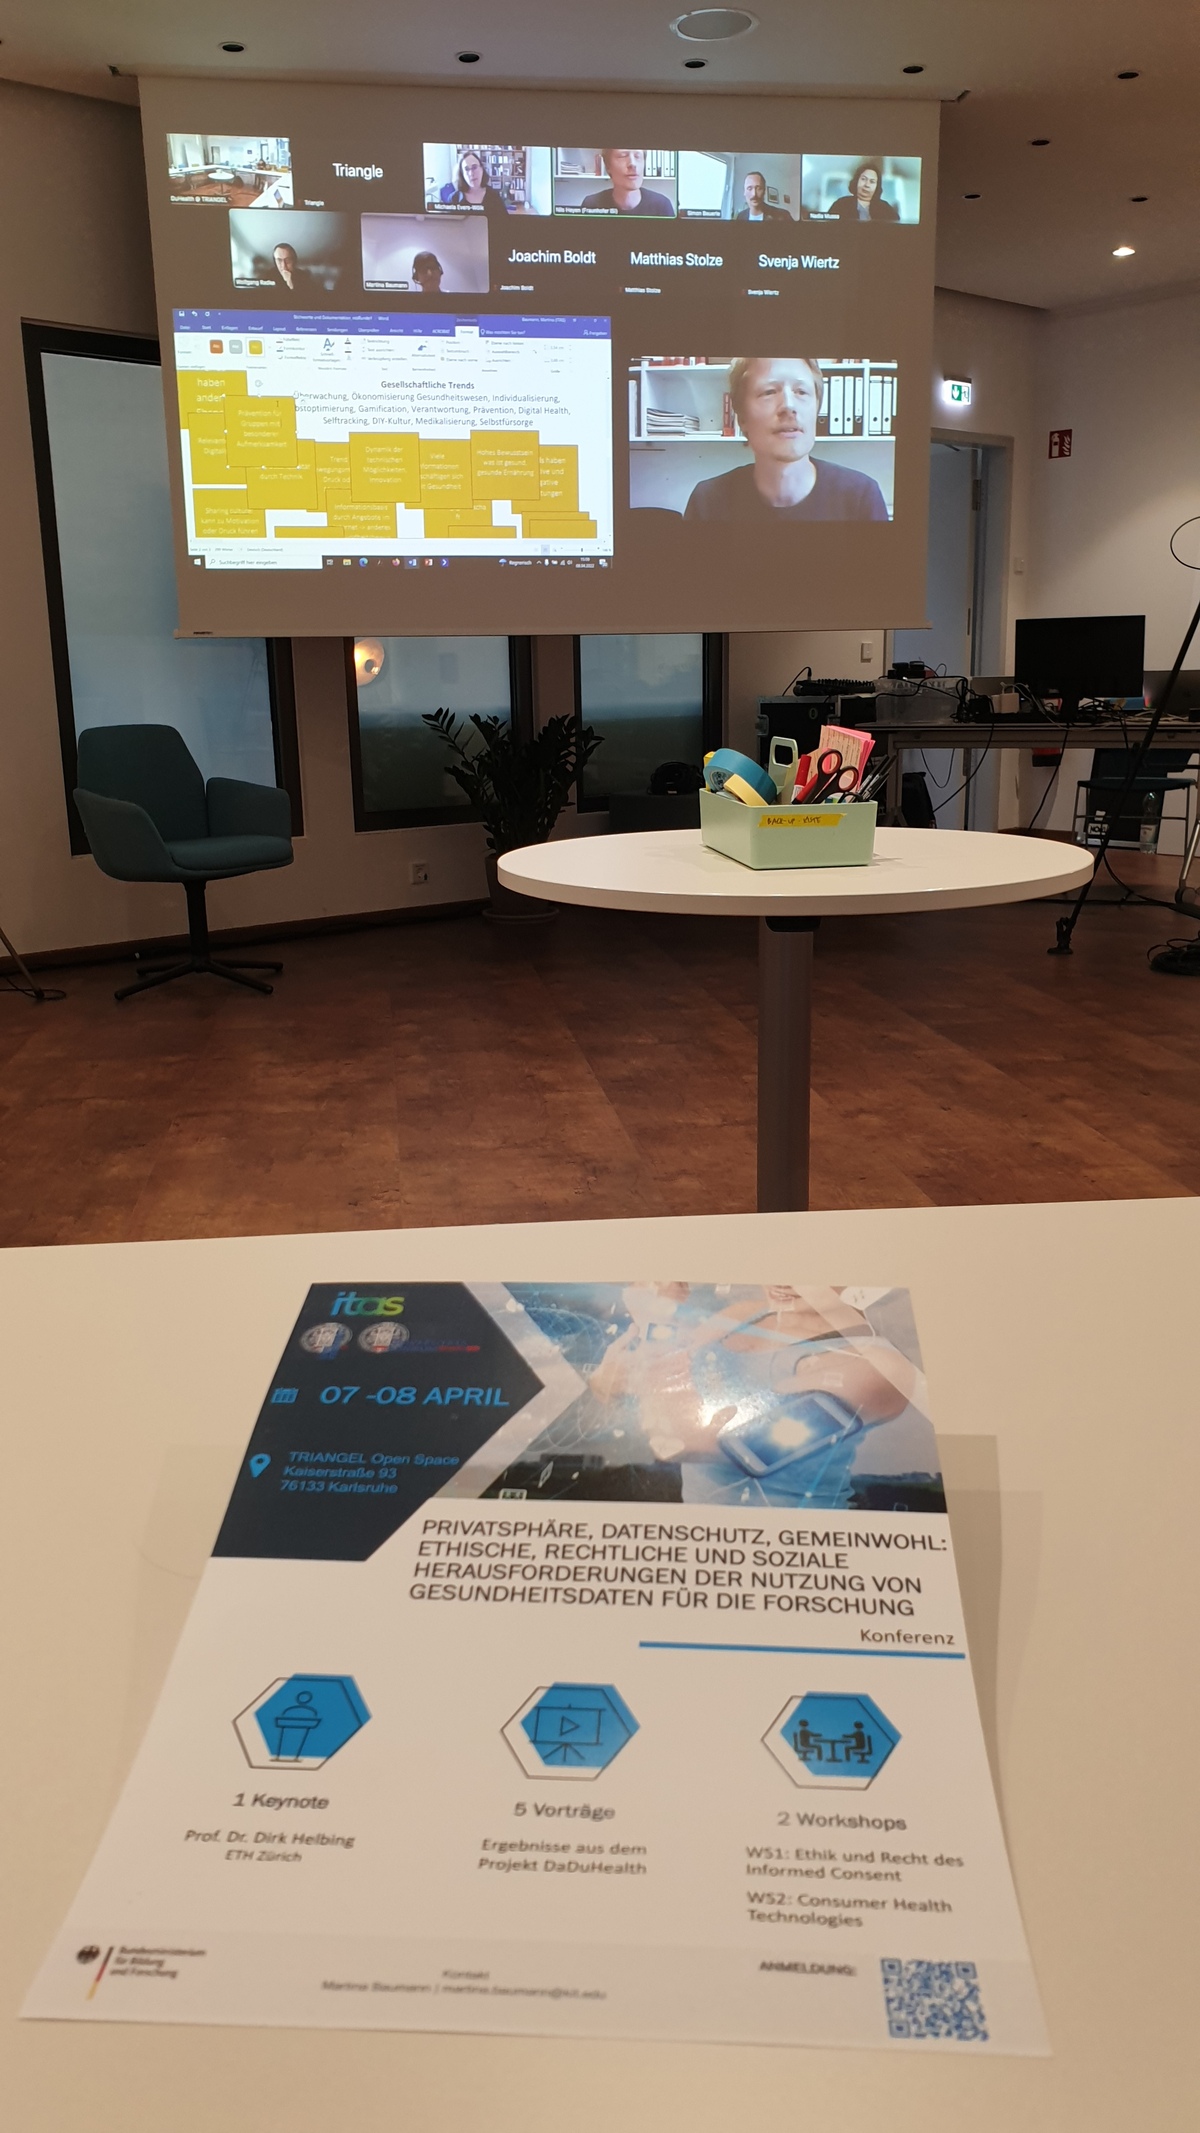 Im Vordergrund liegt das Workshop-Programmheft auf einem Tisch, im Hintergrund sieht man ein aktives Online-Meeting, das auf eine Leinwand projiziert wird.